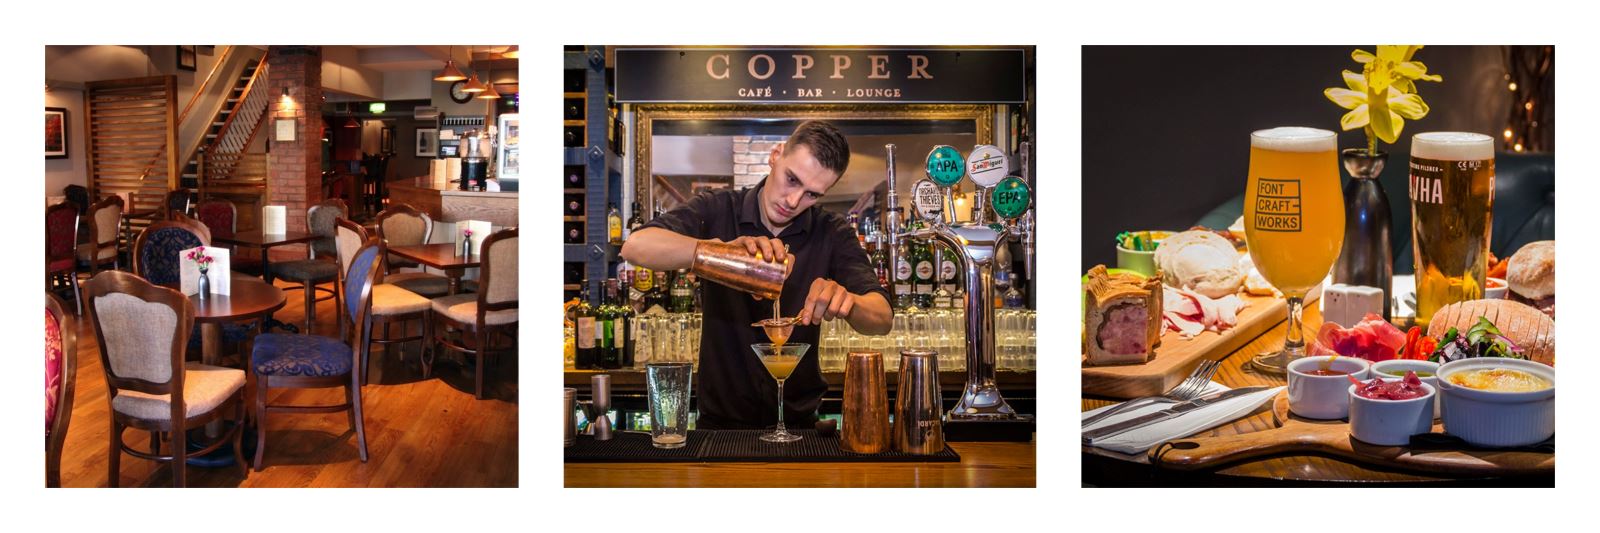 Copper cafe Bar